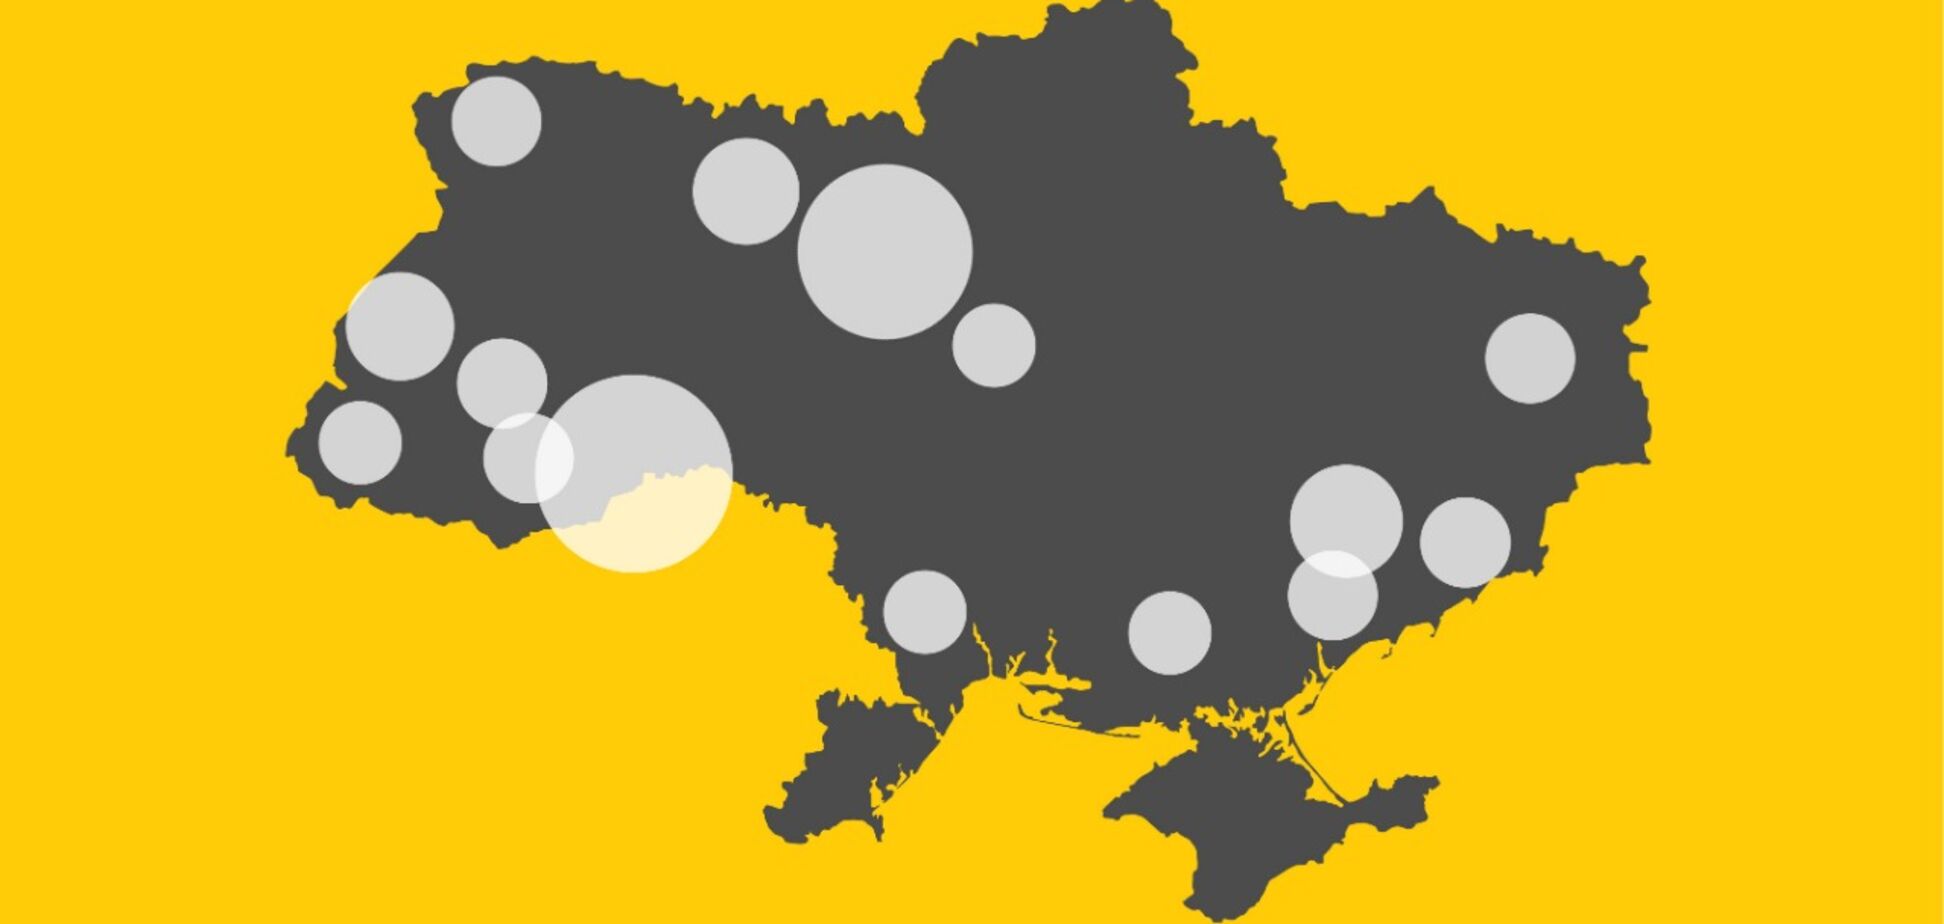 Коронавирус в Украине убил уже 8 человек, больных – 311: данные по областям